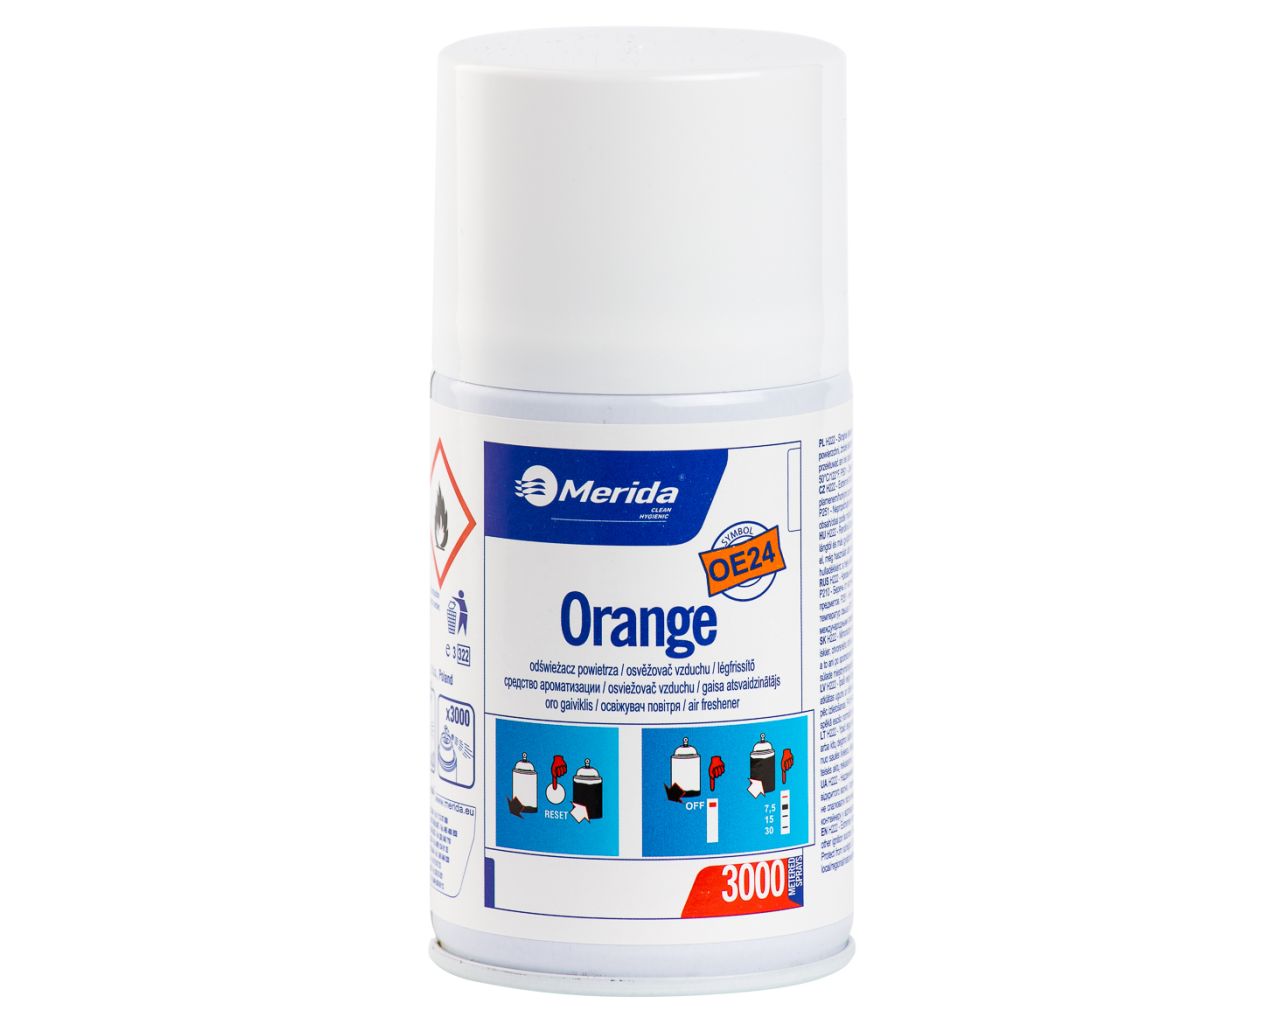 Orange - air freshener refill 243ml